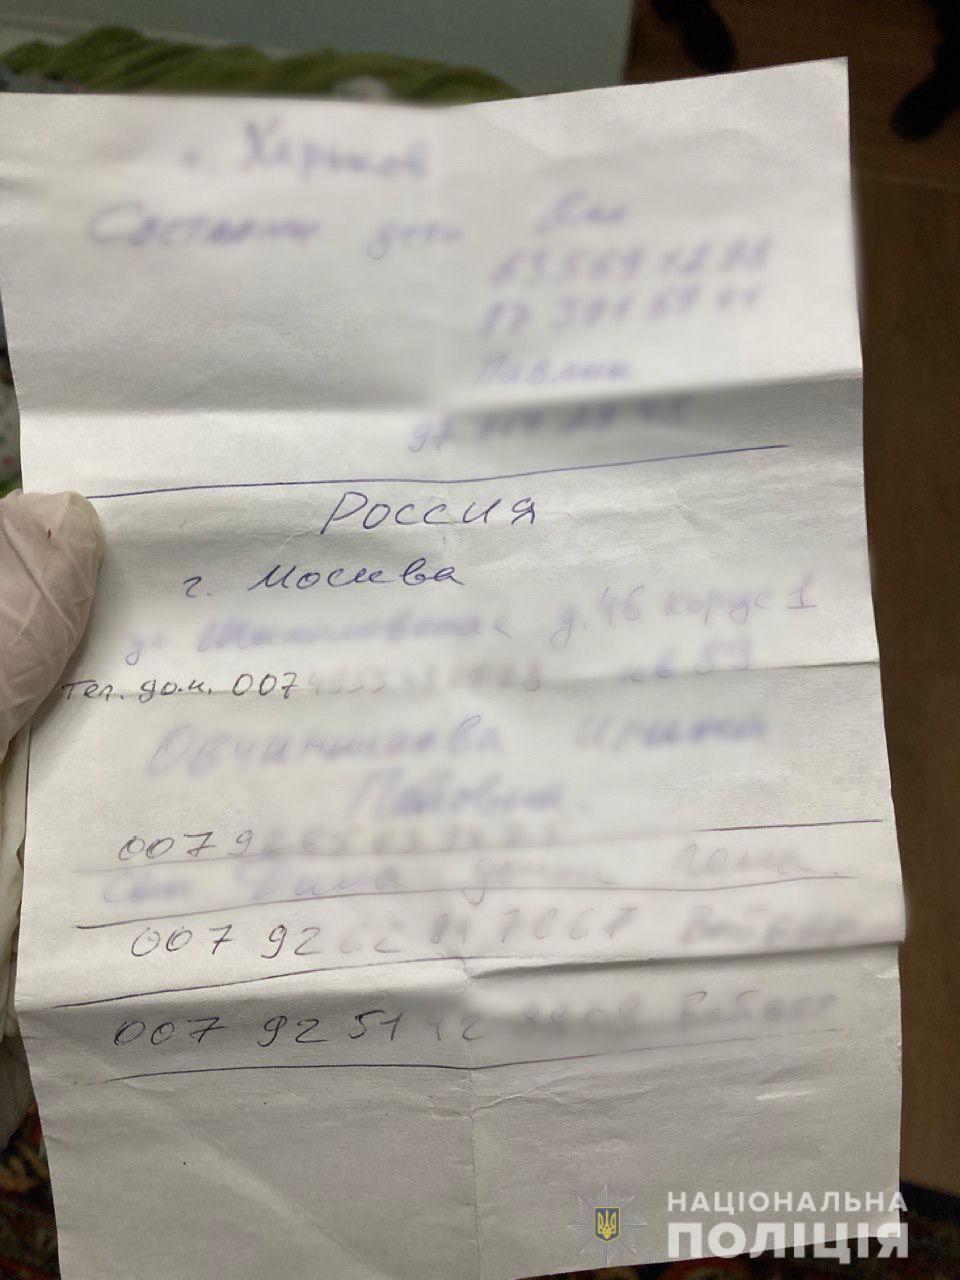 У мужчины нашли номера телефонов российских абонентов